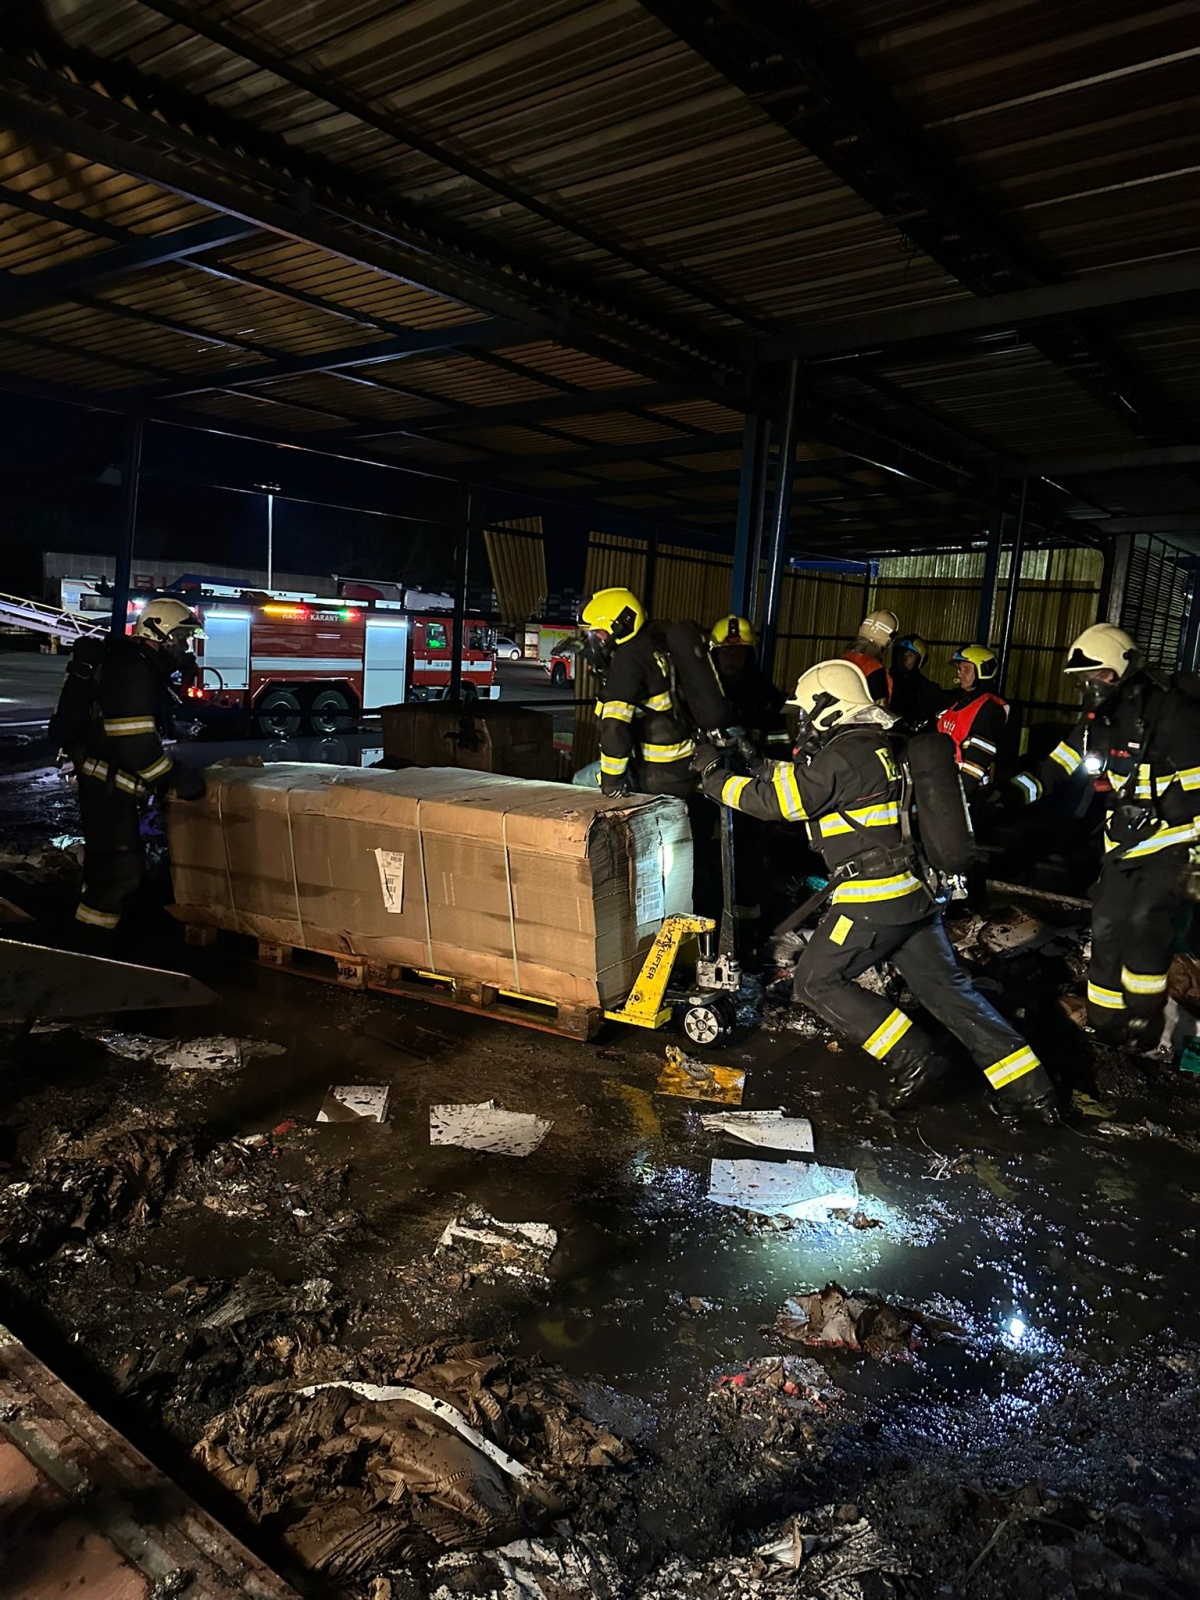 014-Požár skladovací haly v Brandýse nad Labem likvidovaný ve třetím poplachovém stupni.jpeg